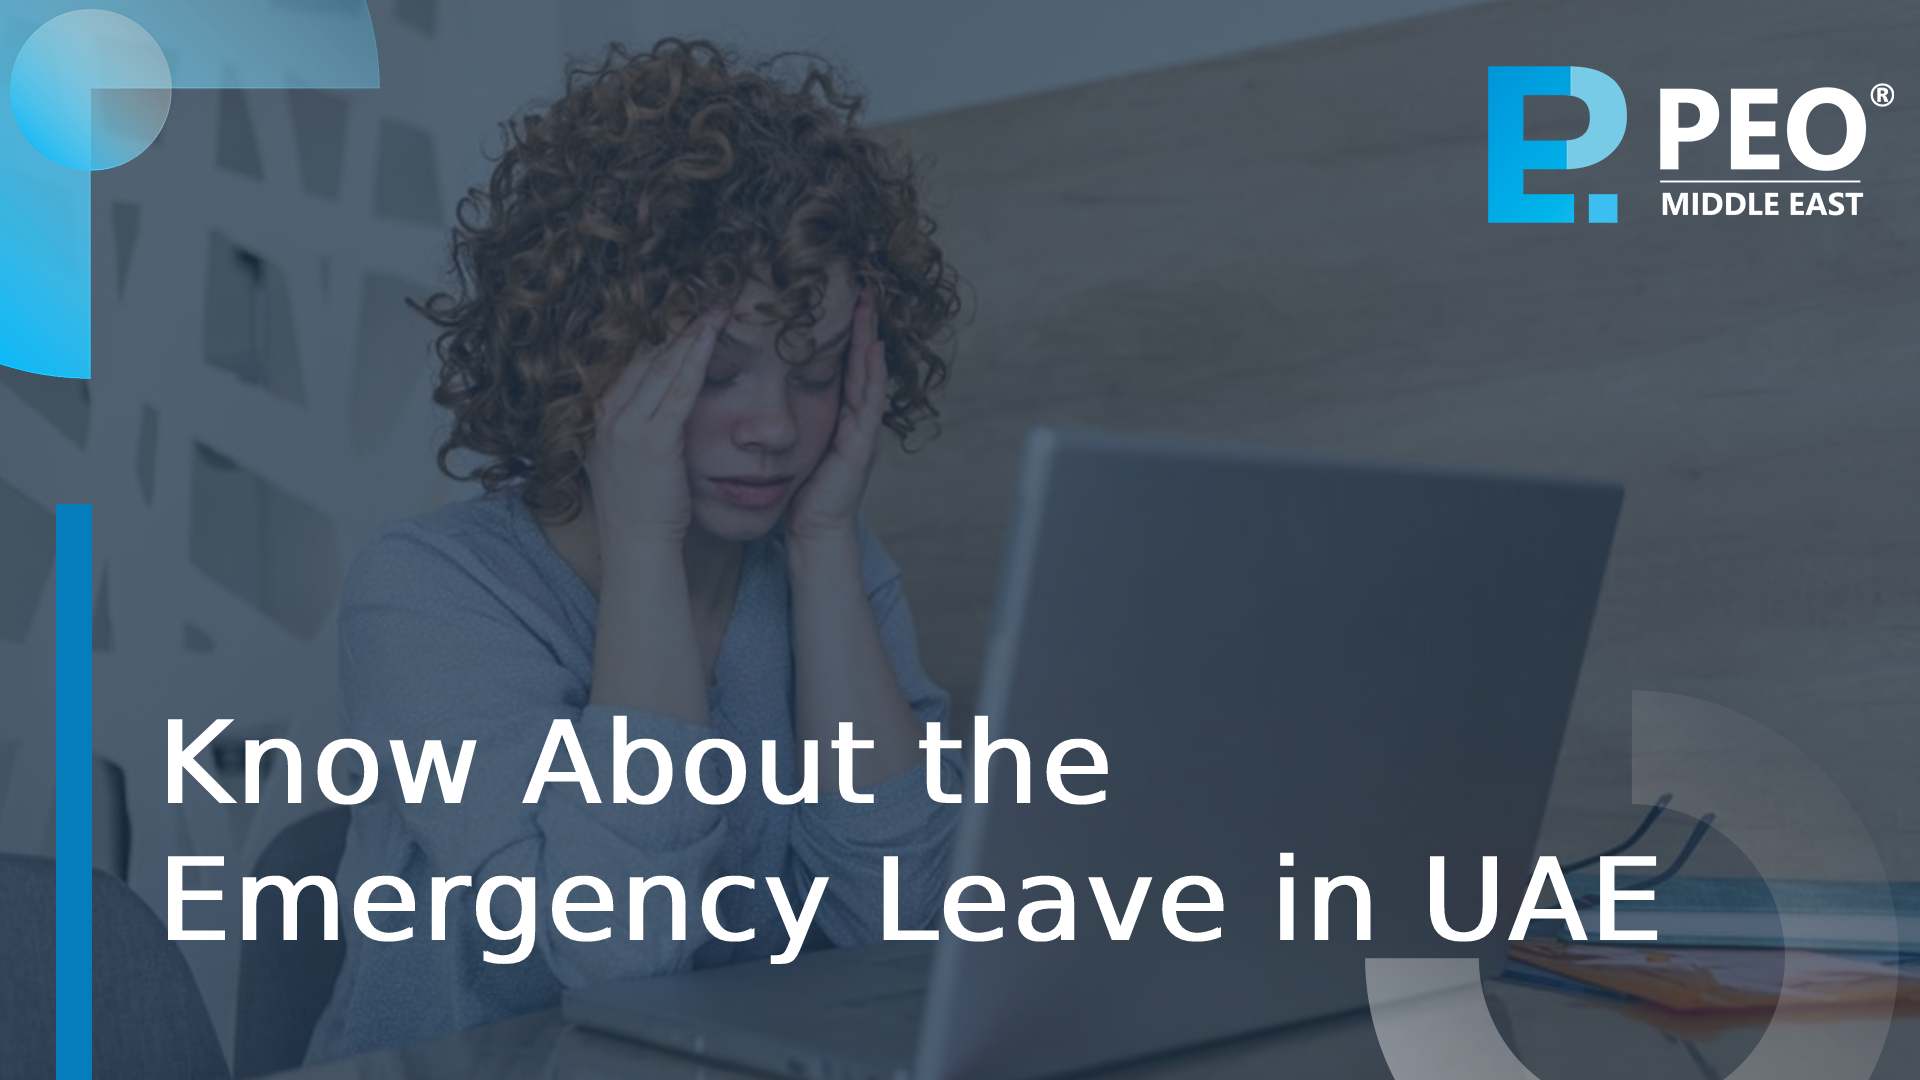 Emergency leave in UAE